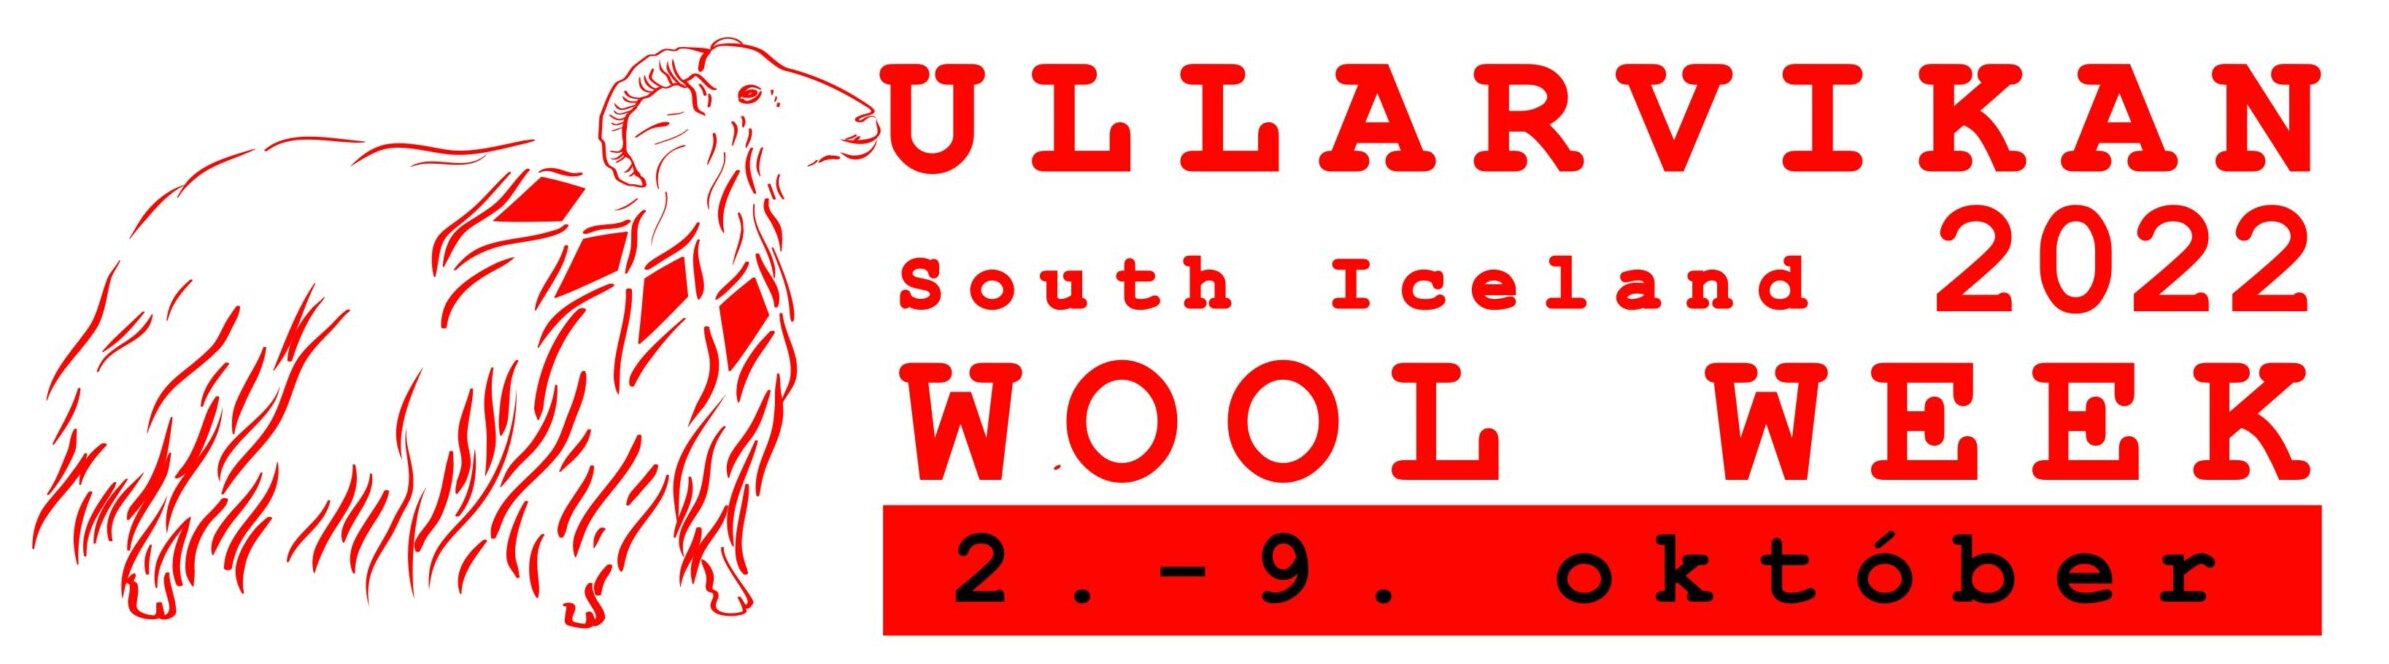 South iceland wool week